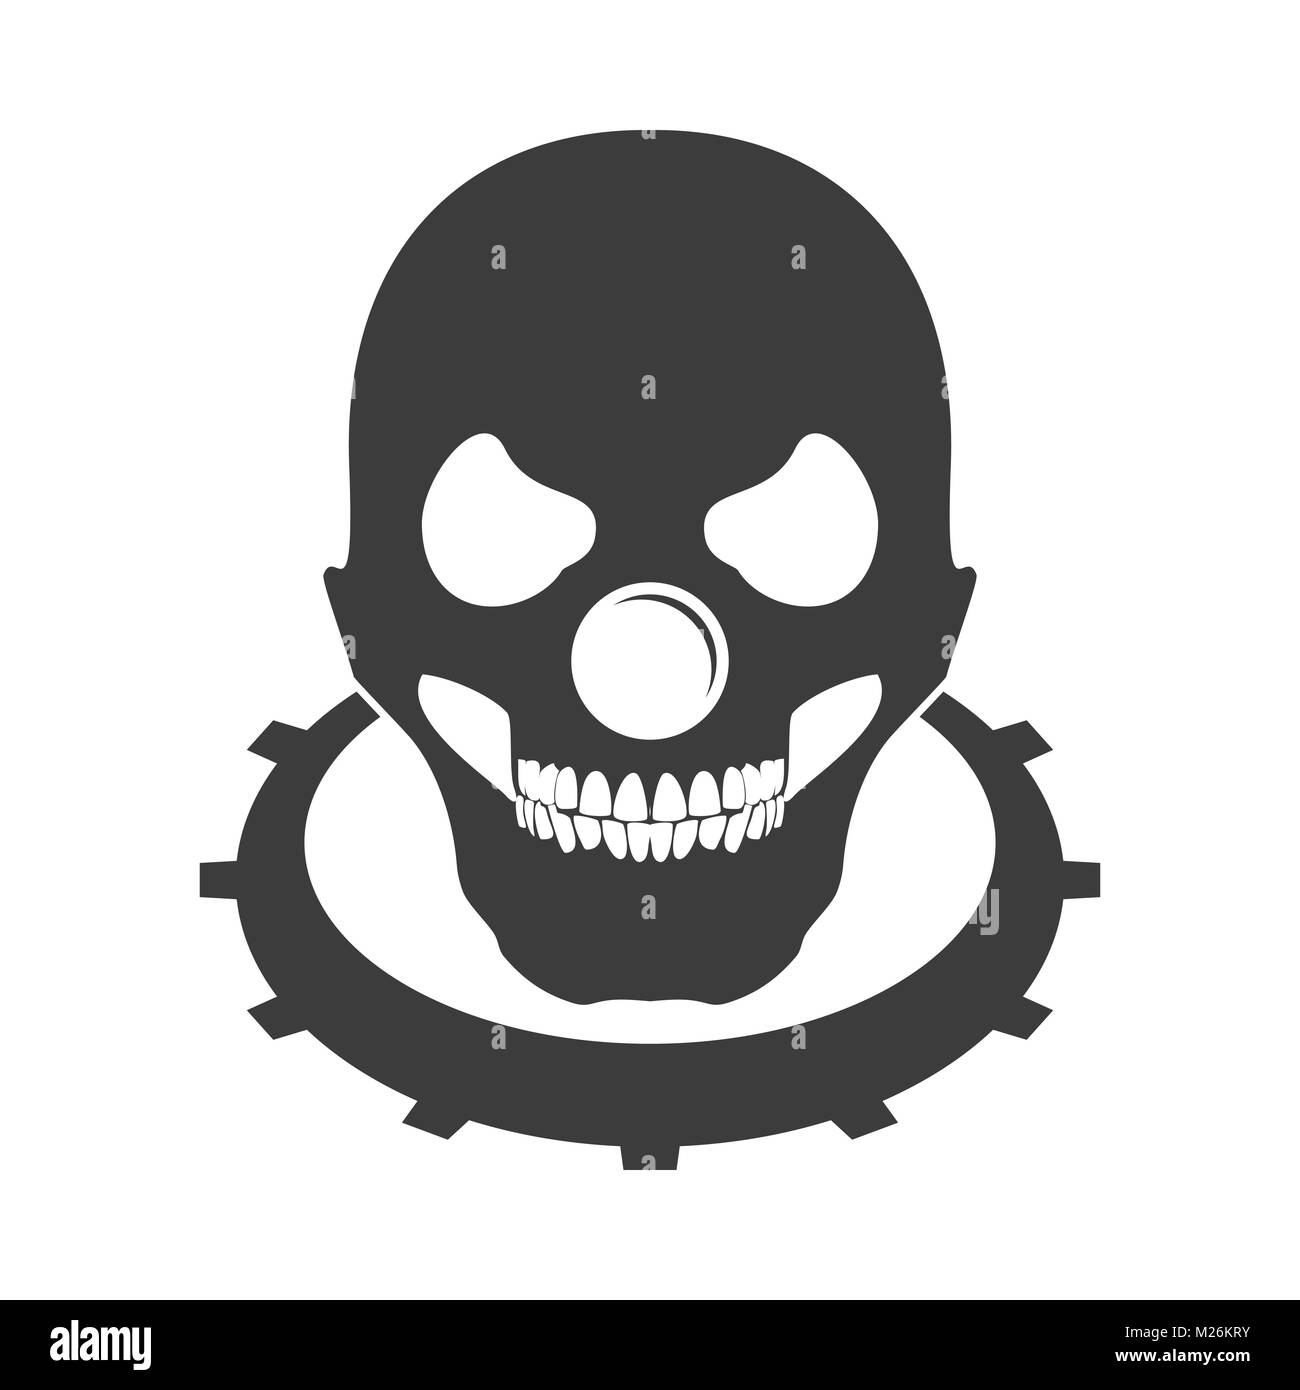 Bald Skull Clown Head Logo Emblem Symbol Vector Graphic Design Stock Vector